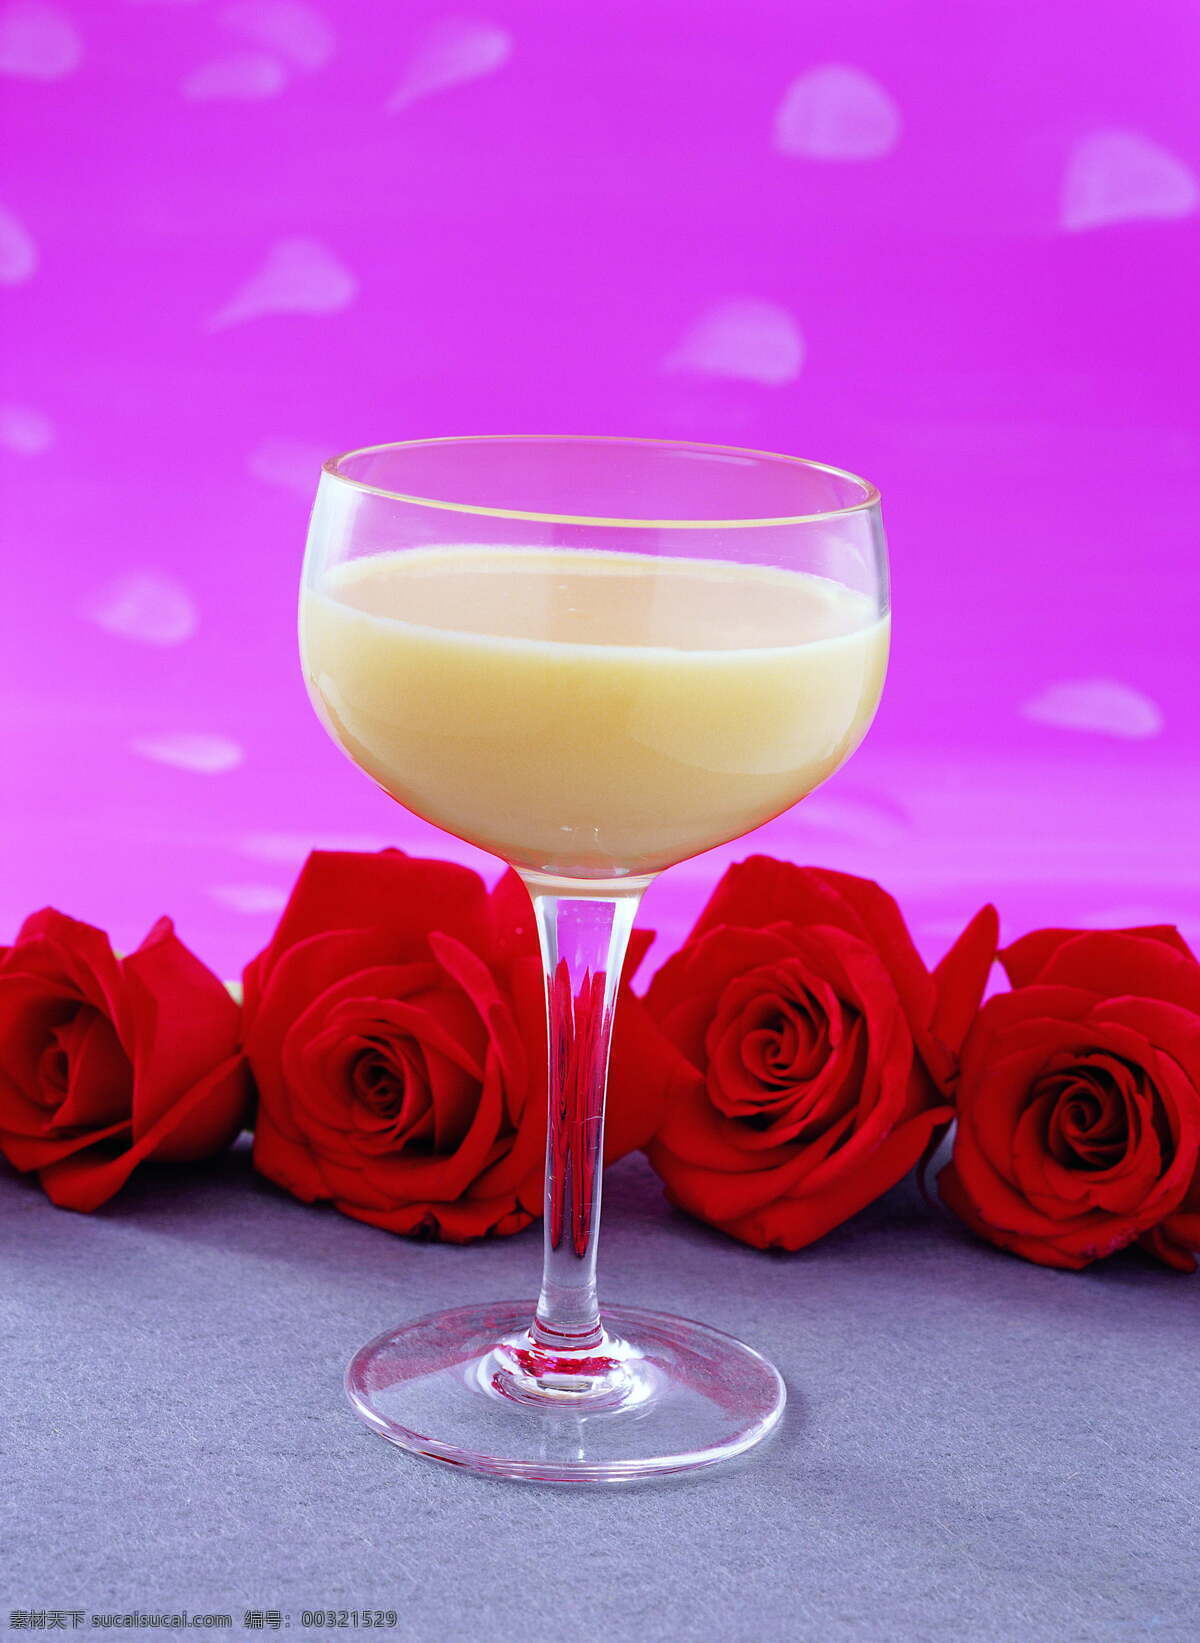 果汁和玫瑰花 果汁 玫瑰花 鲜花 杯子 饮料 酒水饮料 餐饮美食 紫色